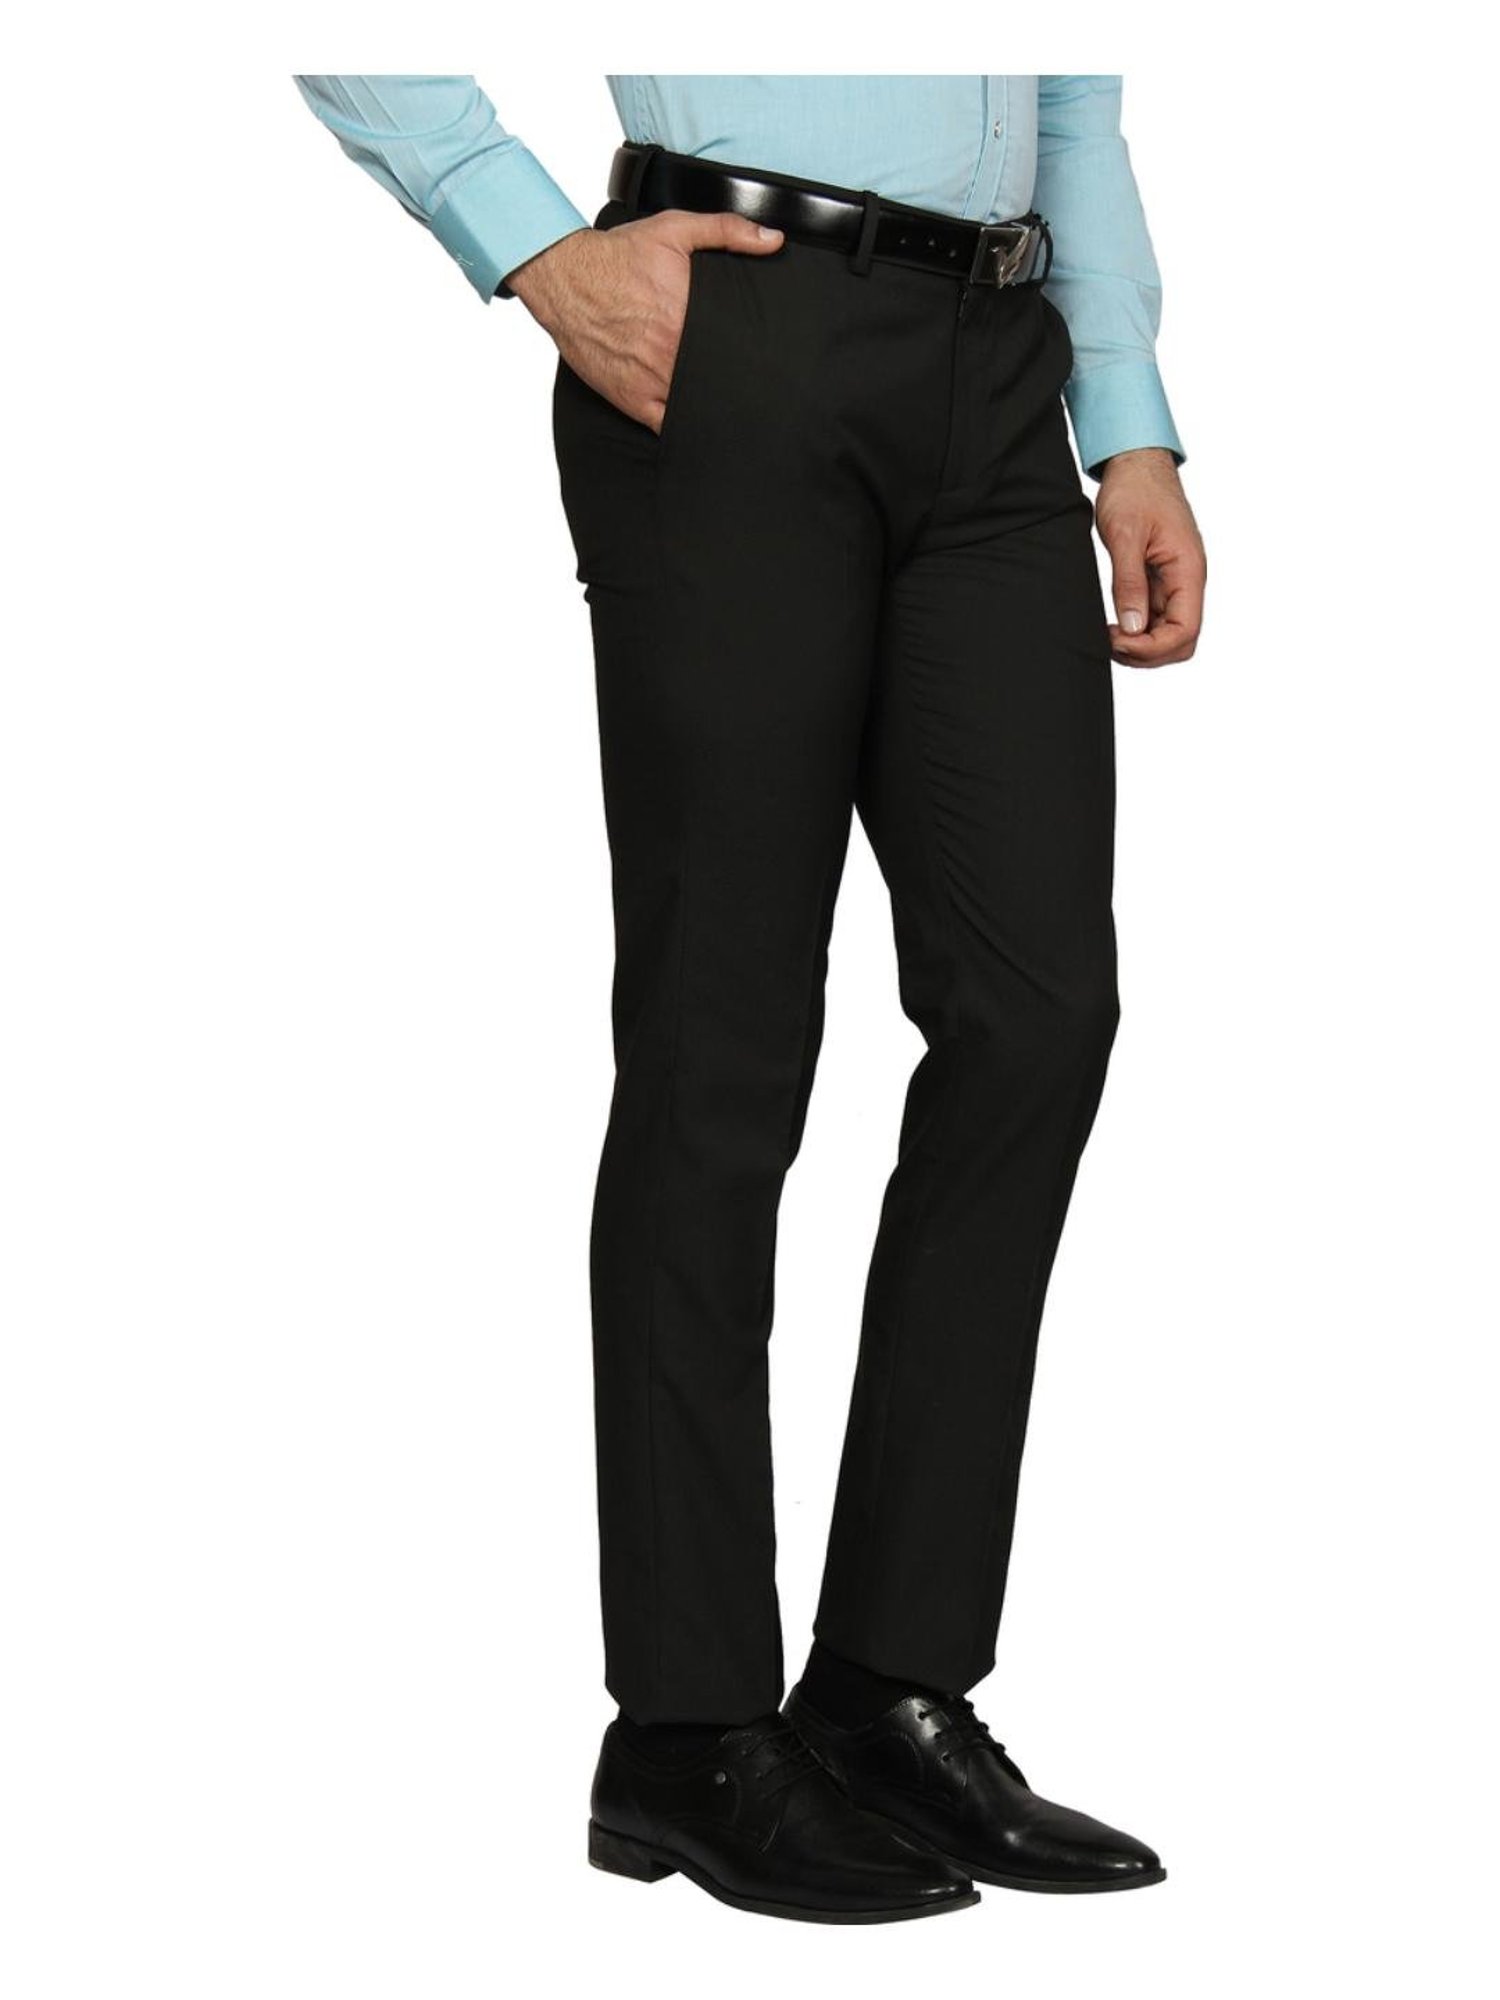 B95 Slim Fit Trousers for Men  Blackberrys Menswear  YouTube